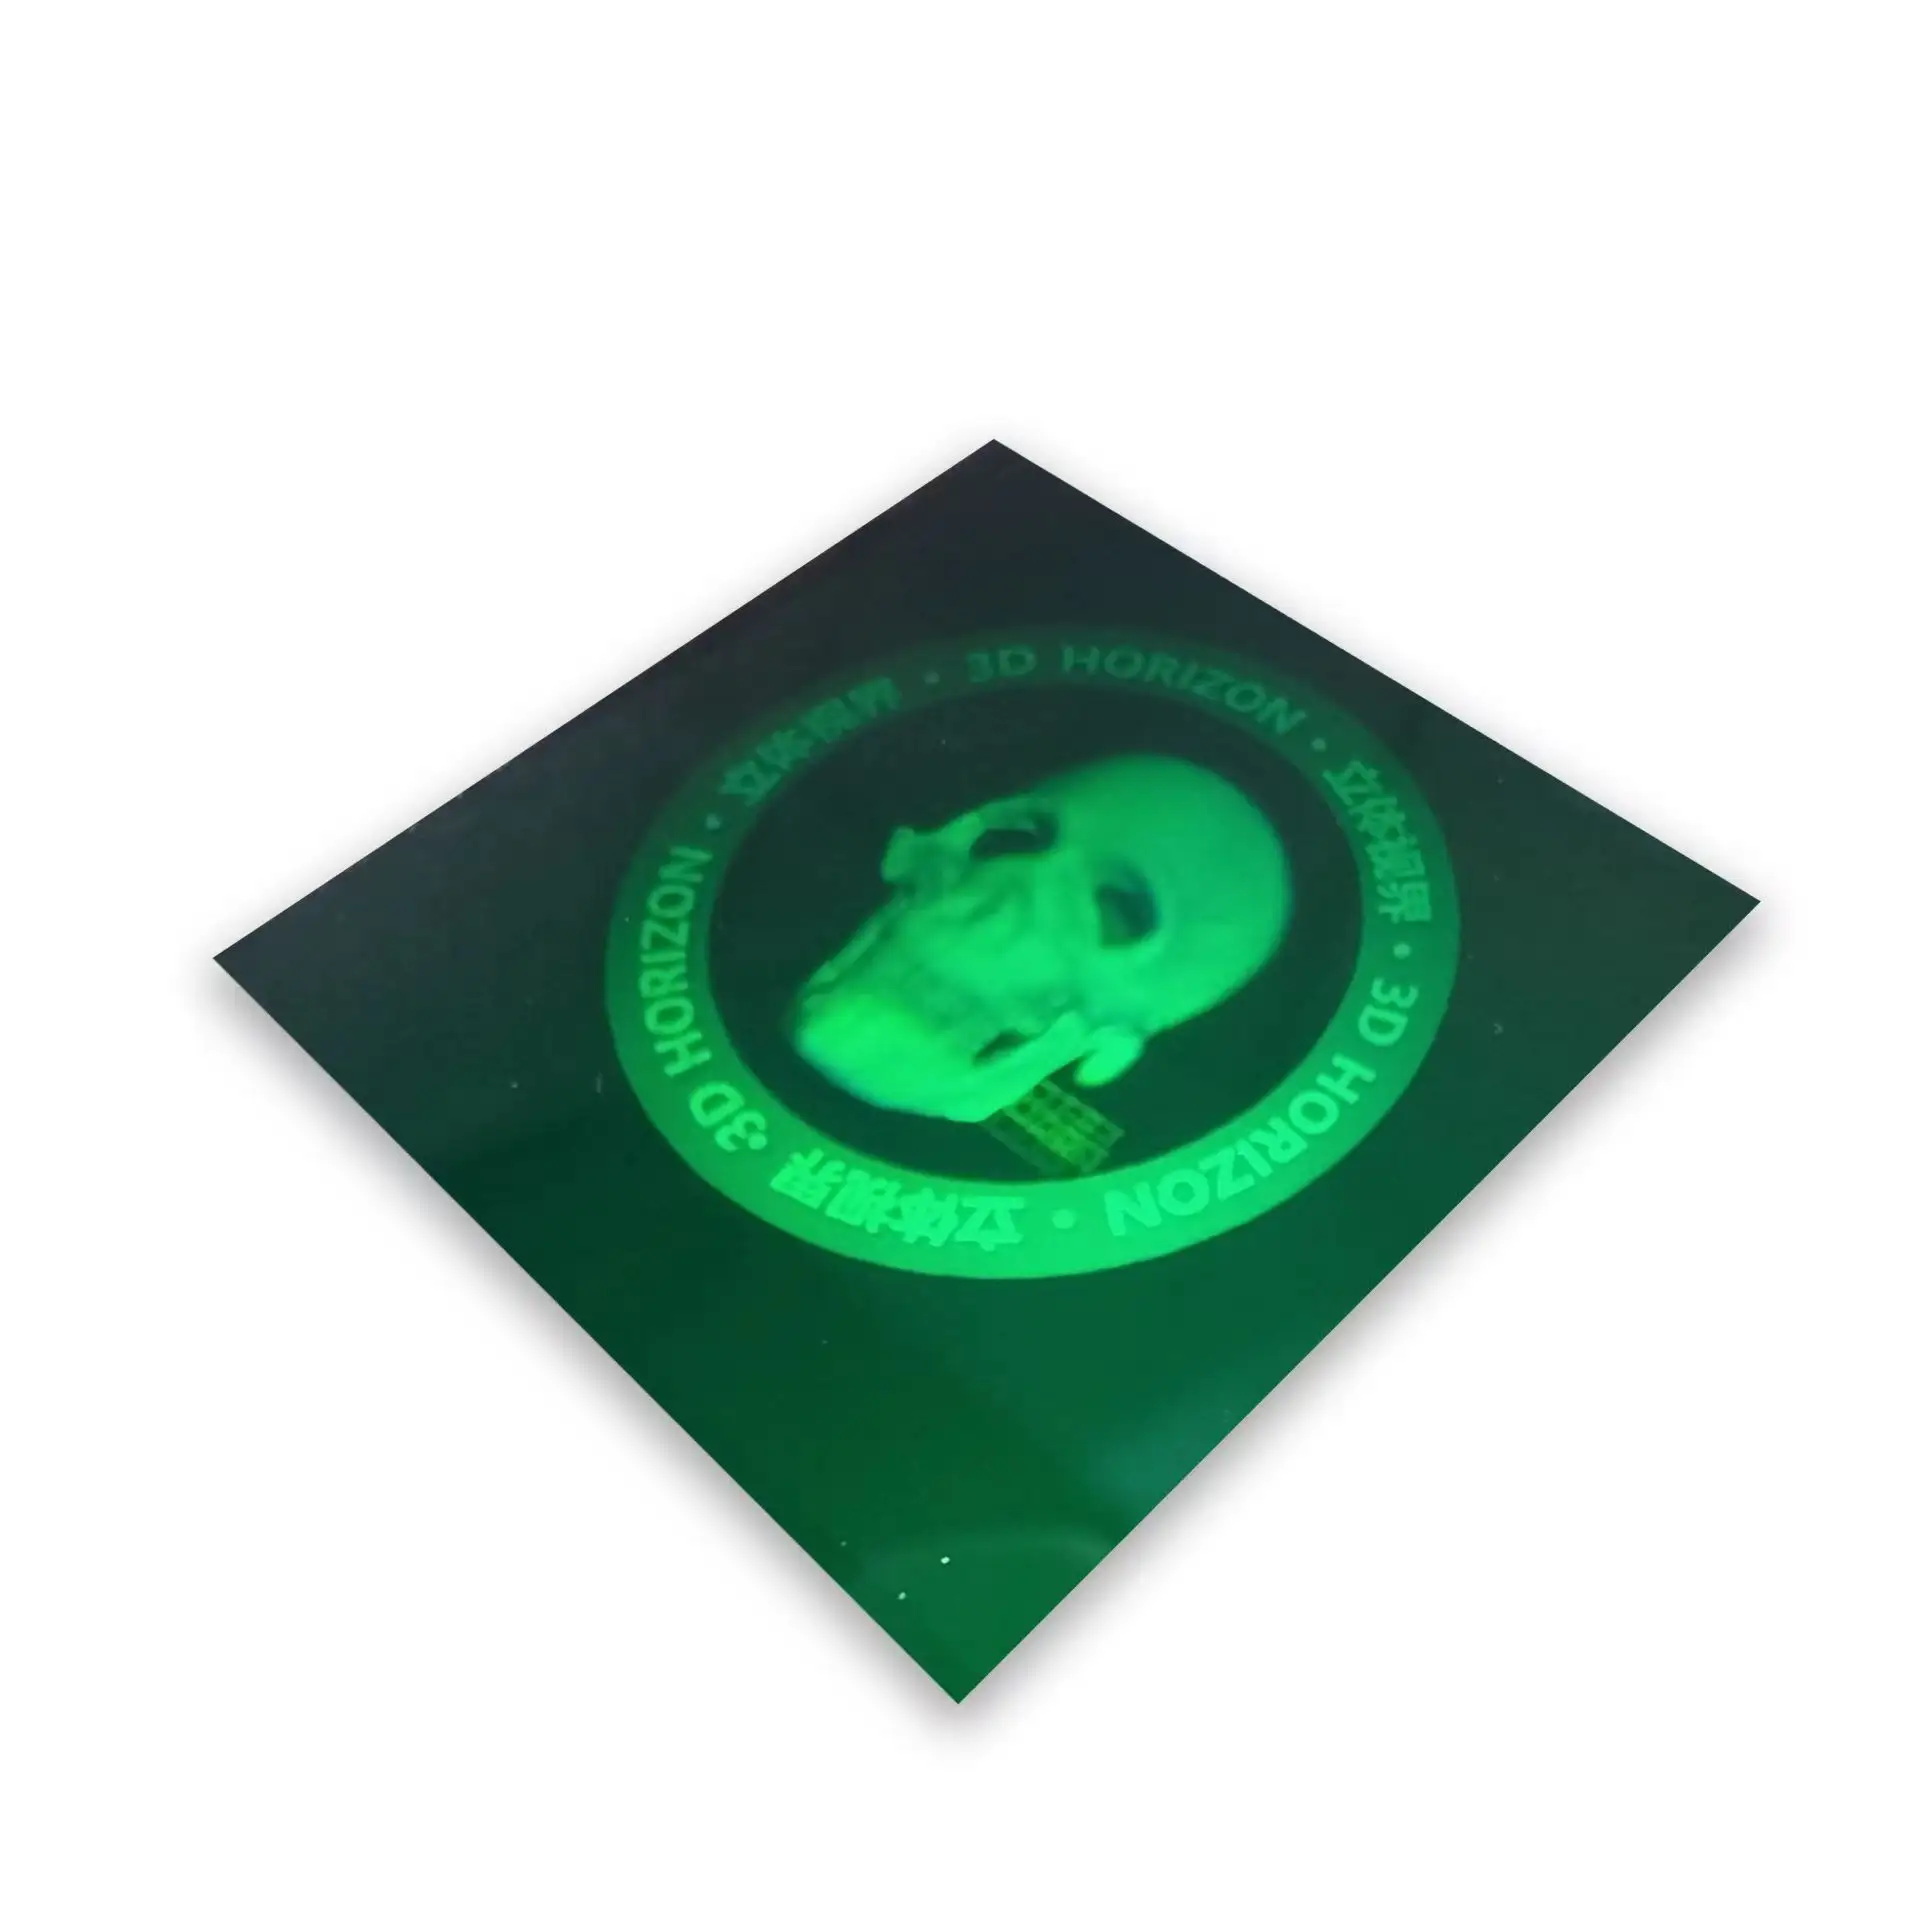 Caliente Popular embalaje personalizado Anti-Falsificación marca certificado hacer pegatina holográfica etiqueta seguridad Oem holograma pegatina